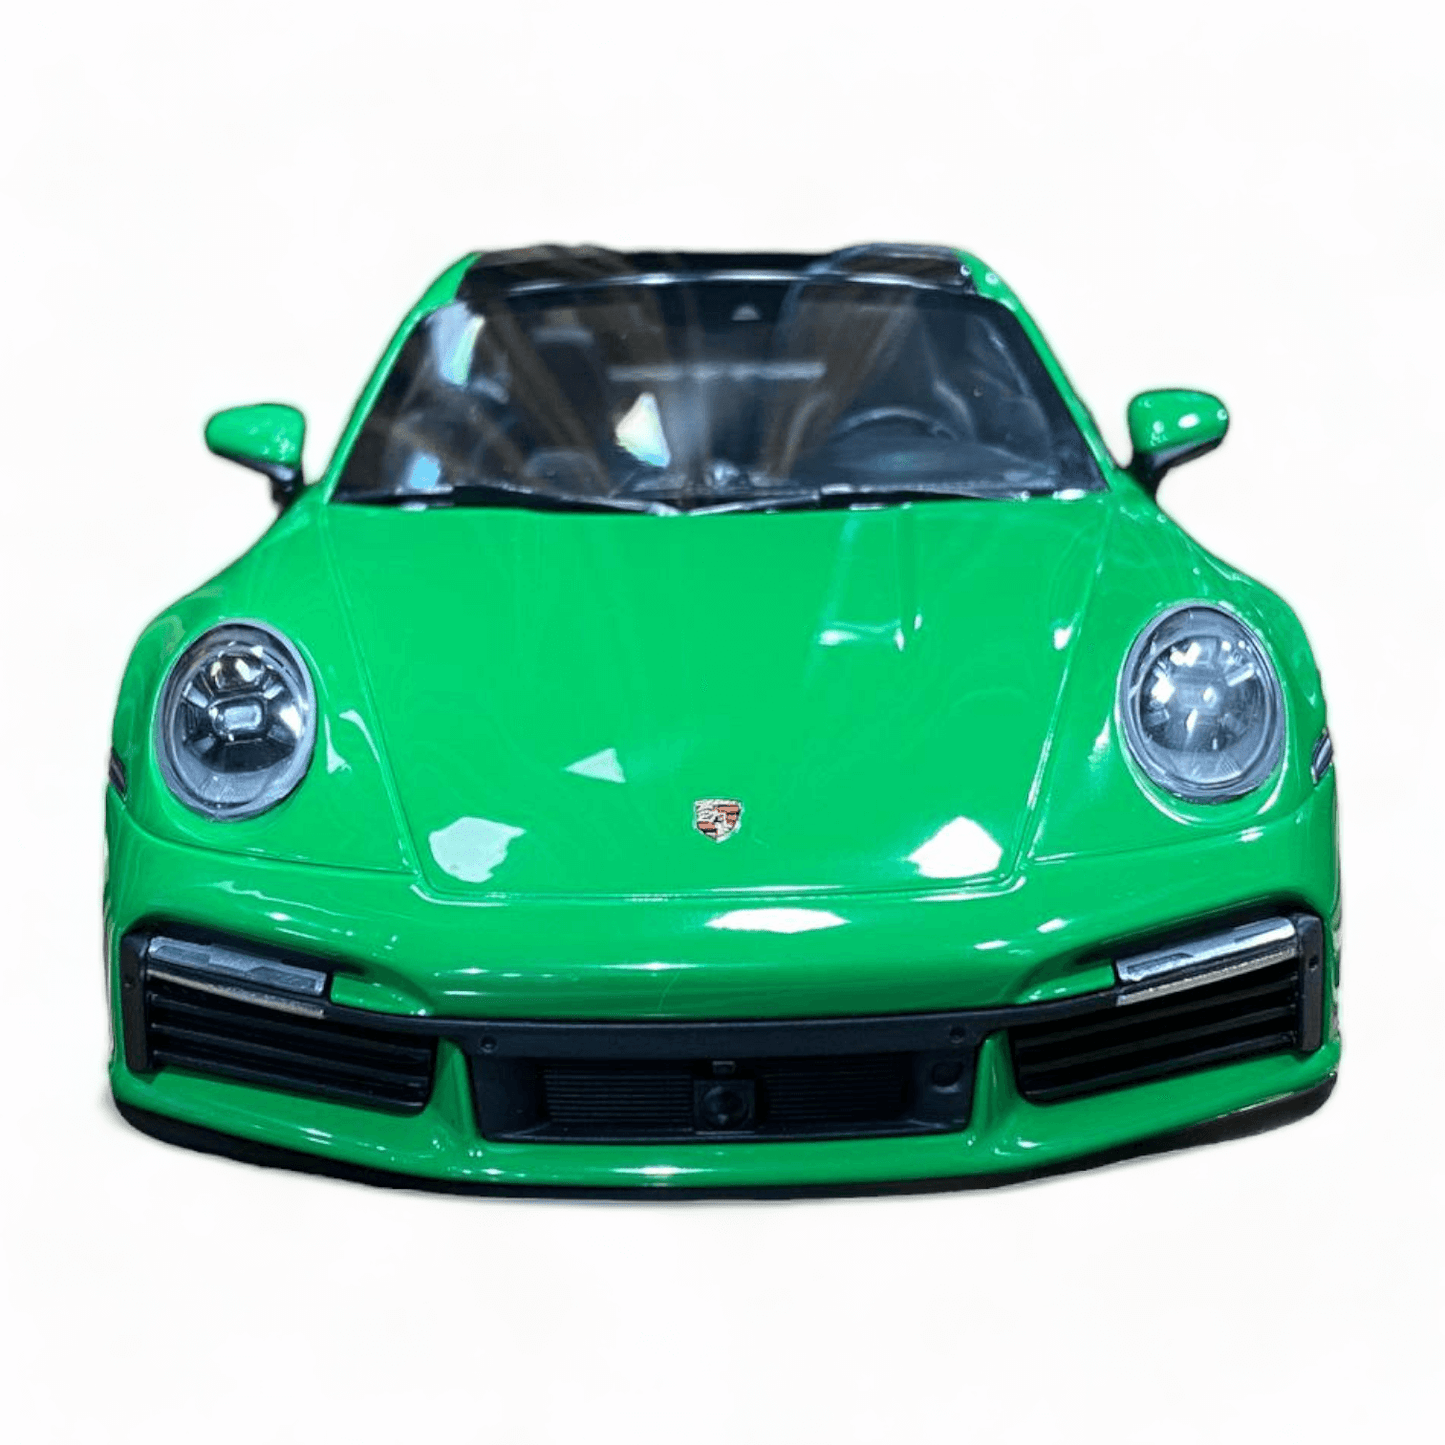 Porsche 911 Turbo S Minichamps